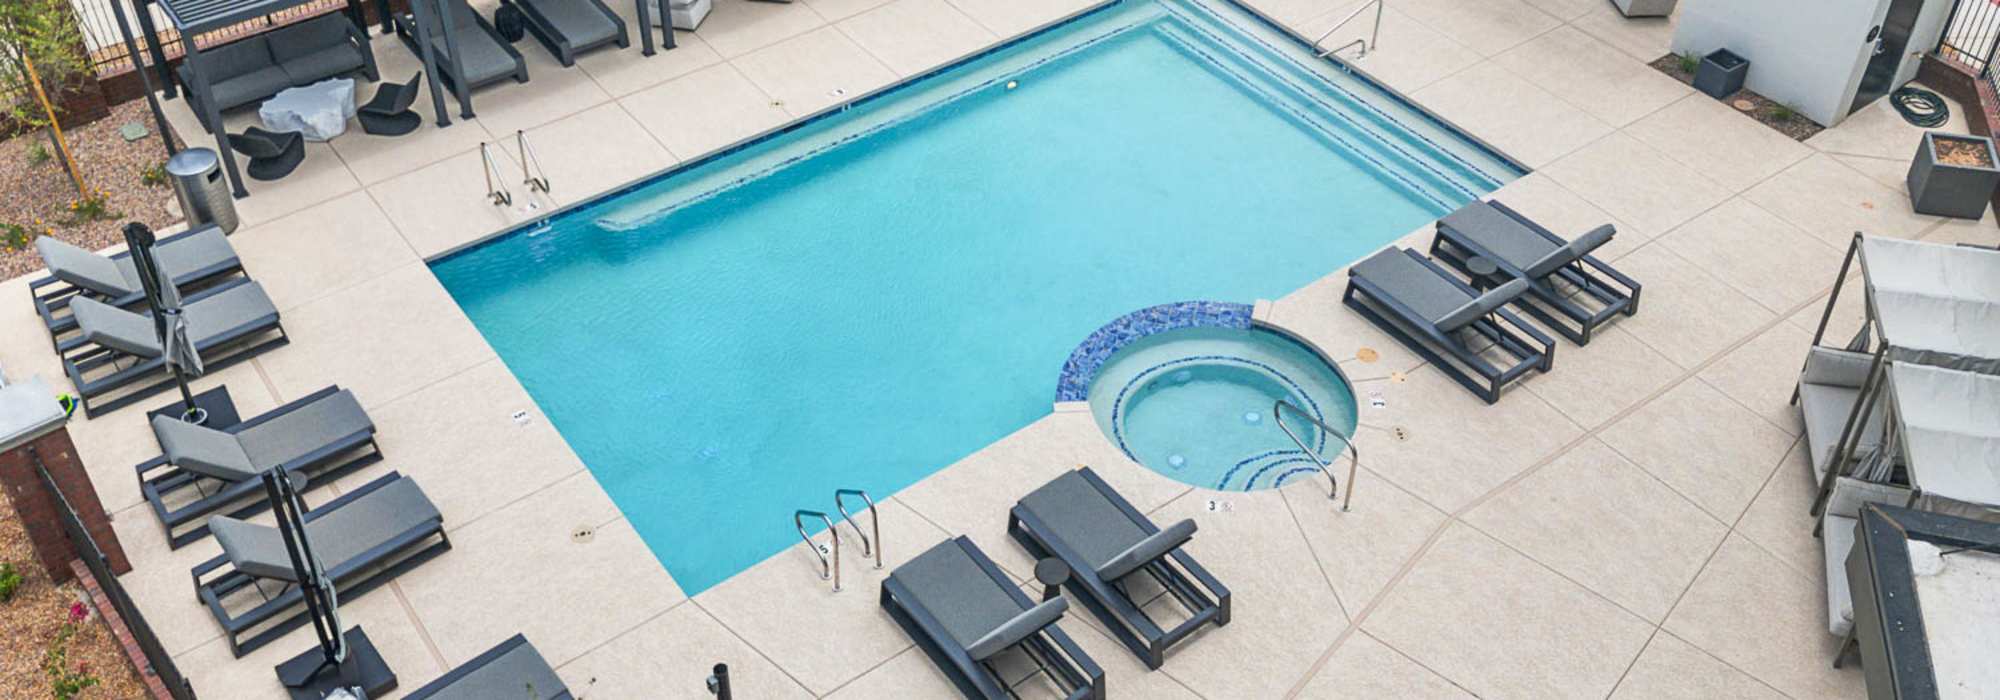 Resort-style pool at Quintana at Cooley Station in Gilbert, Arizona